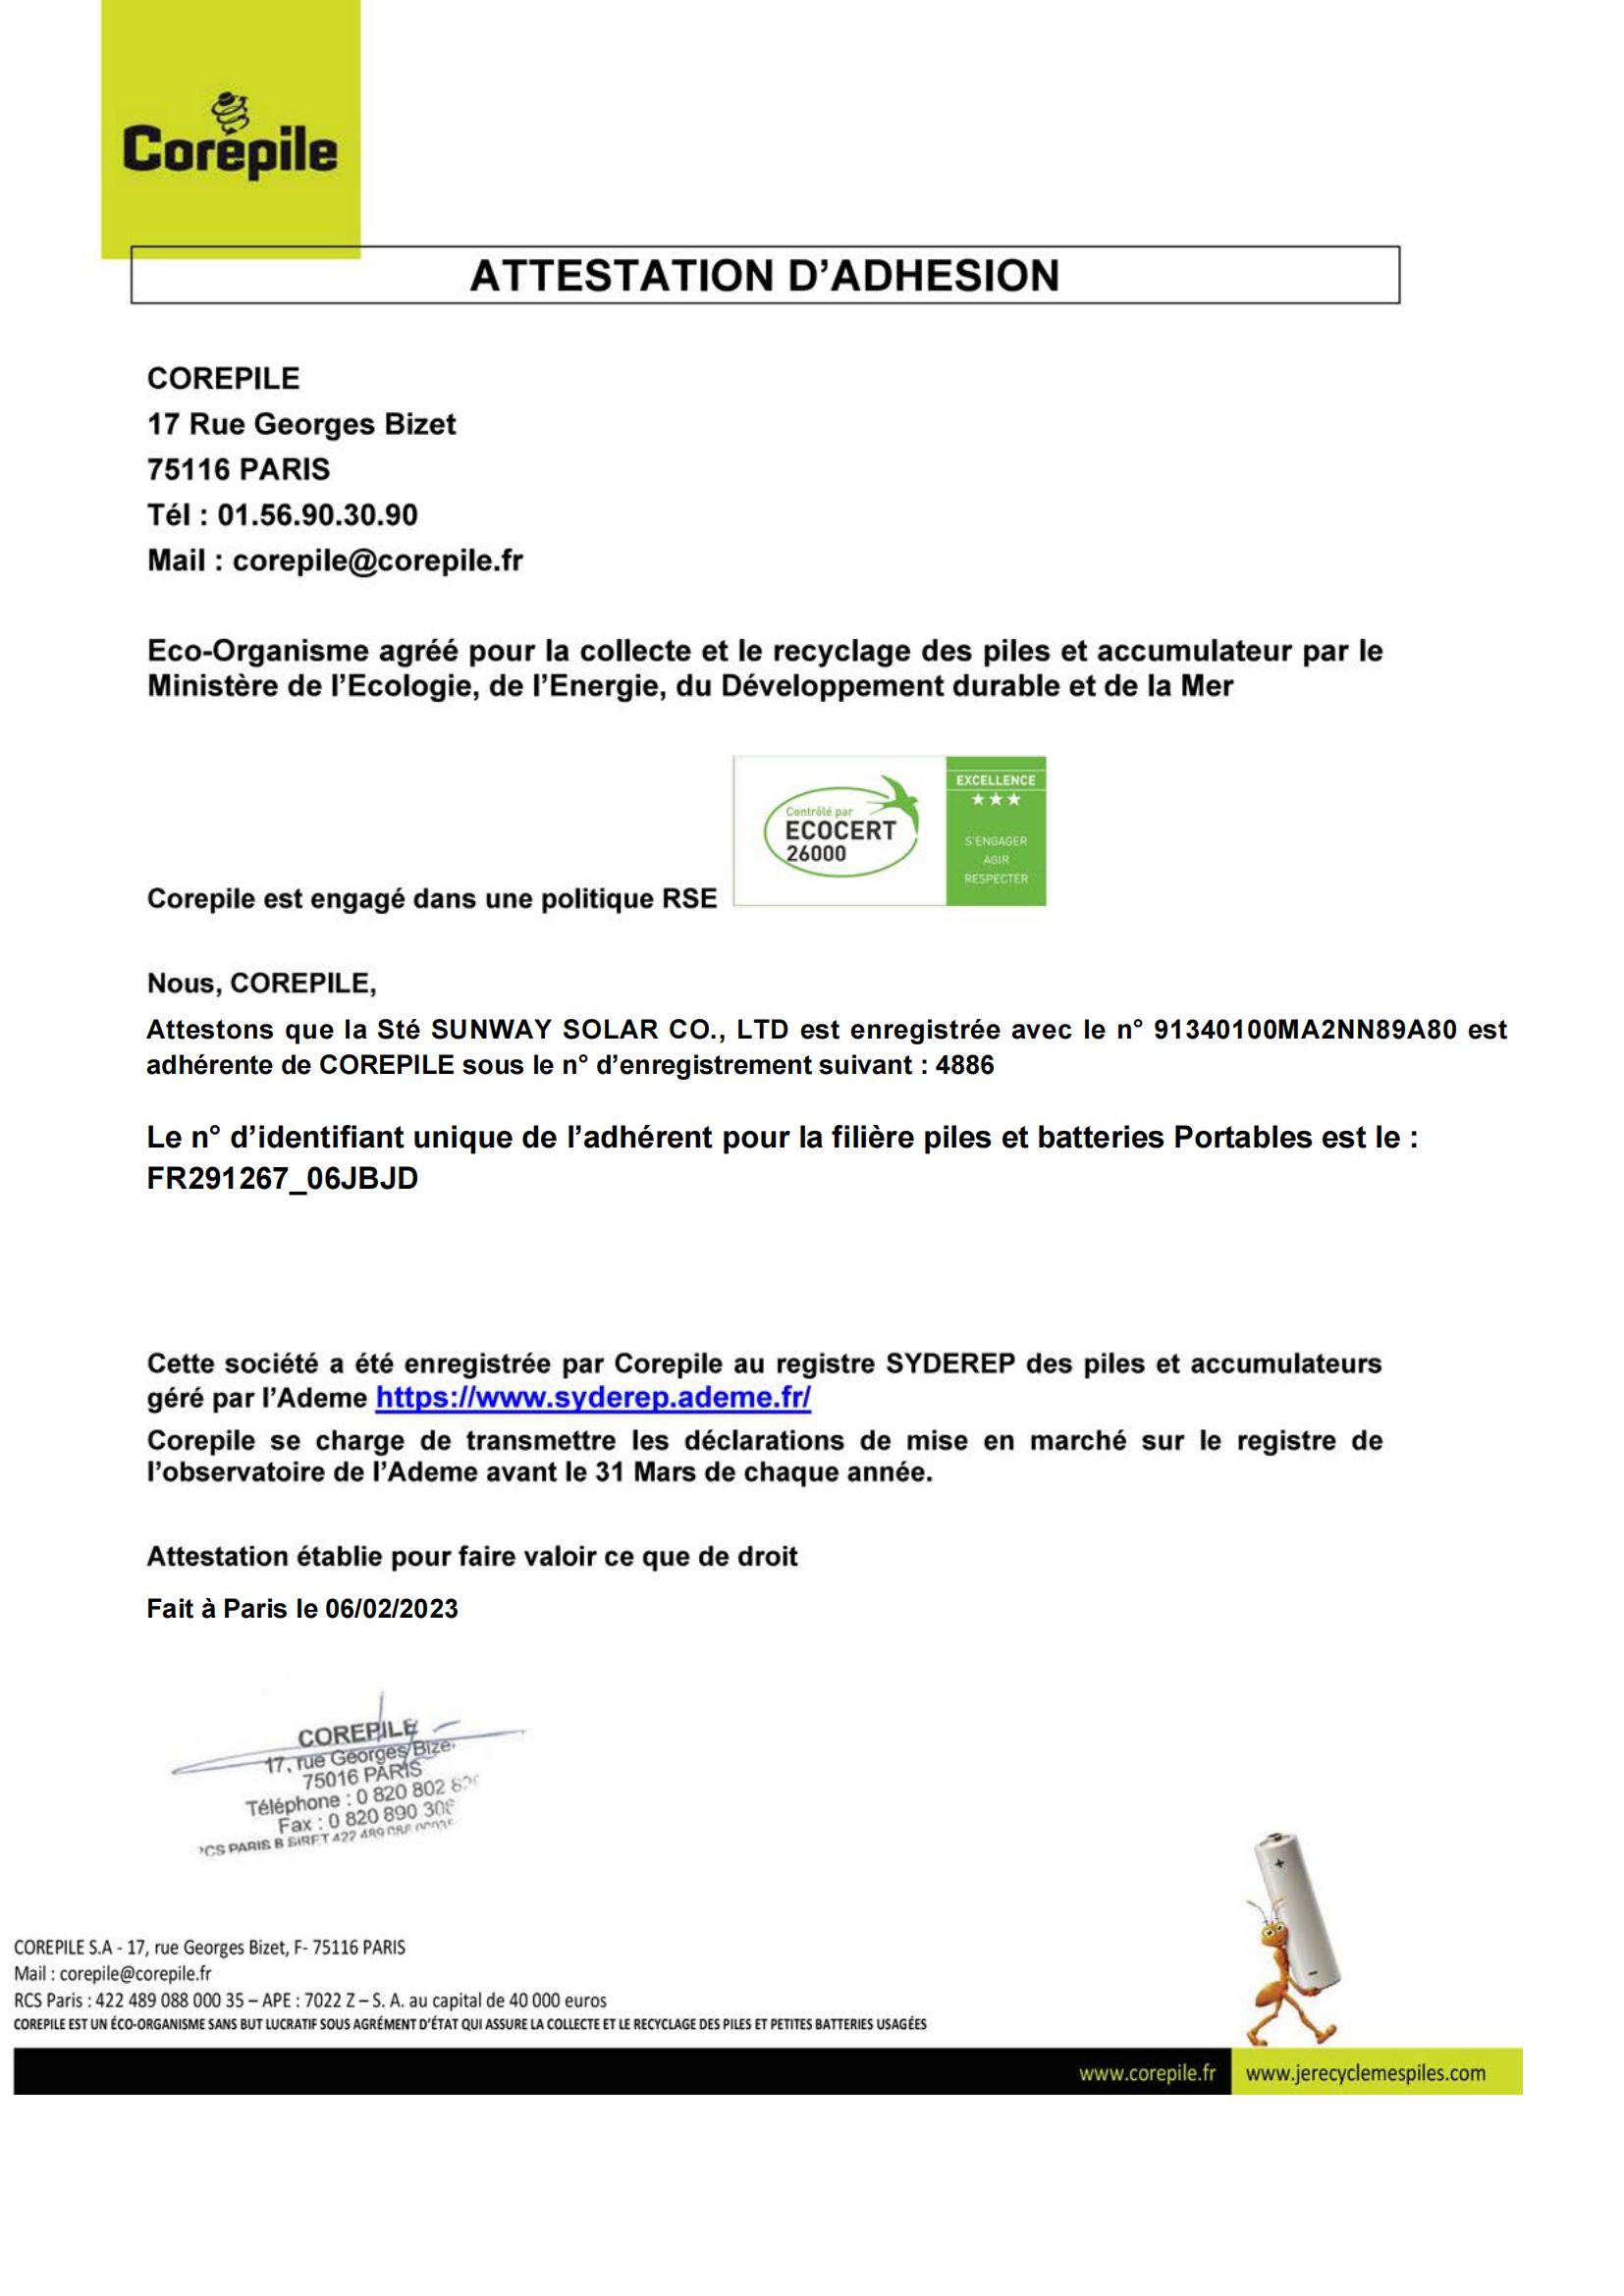 法国电池法的证书-合肥昇维科技有限公司_00